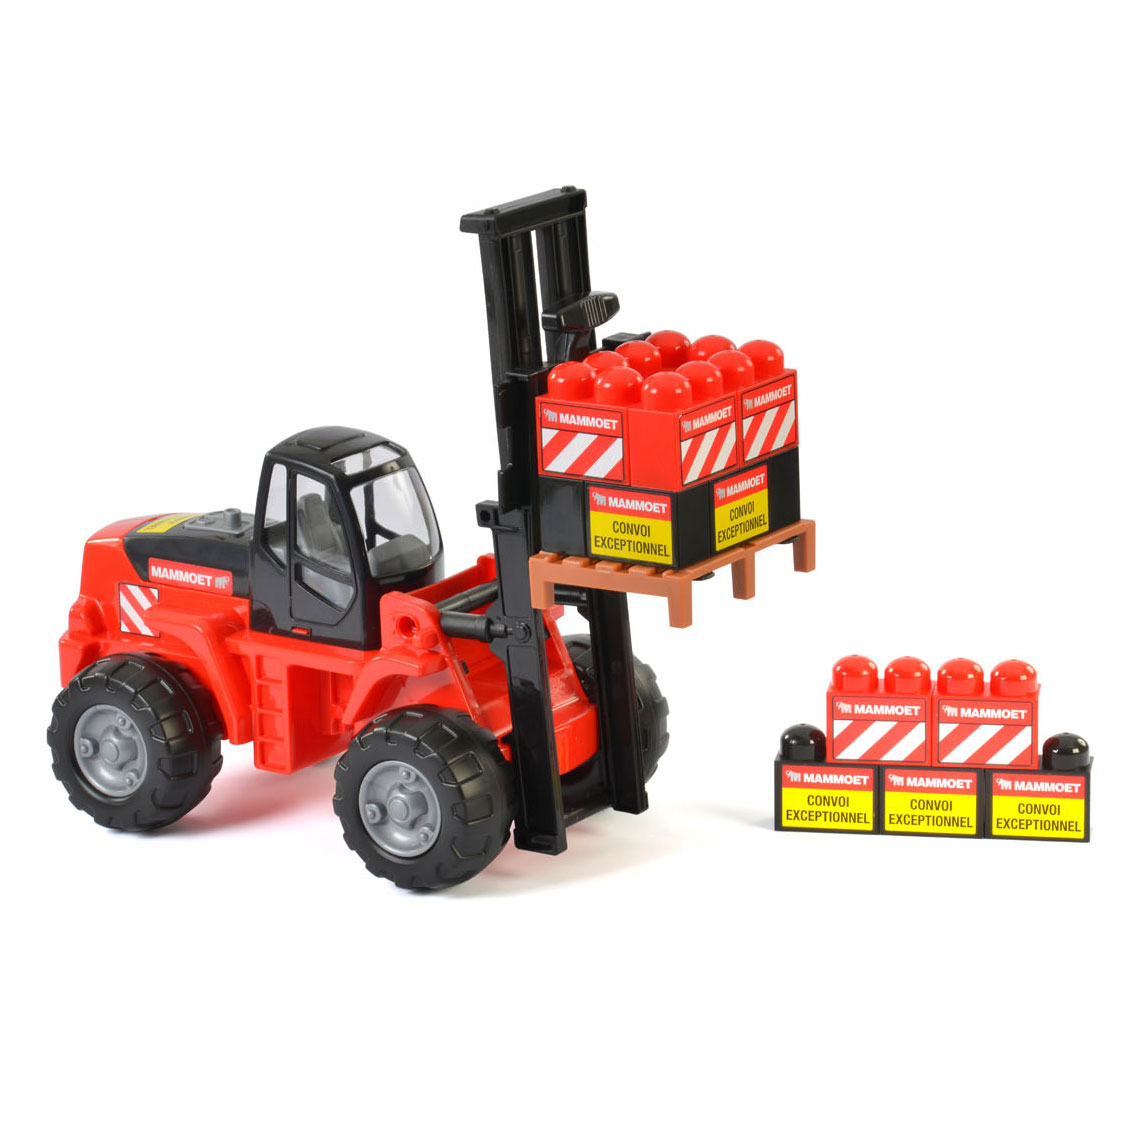 MAMMOET Gabelstapler Baufahrzeug Kinderspielzeug Sandspielzeug mit 15 Bausteinen 